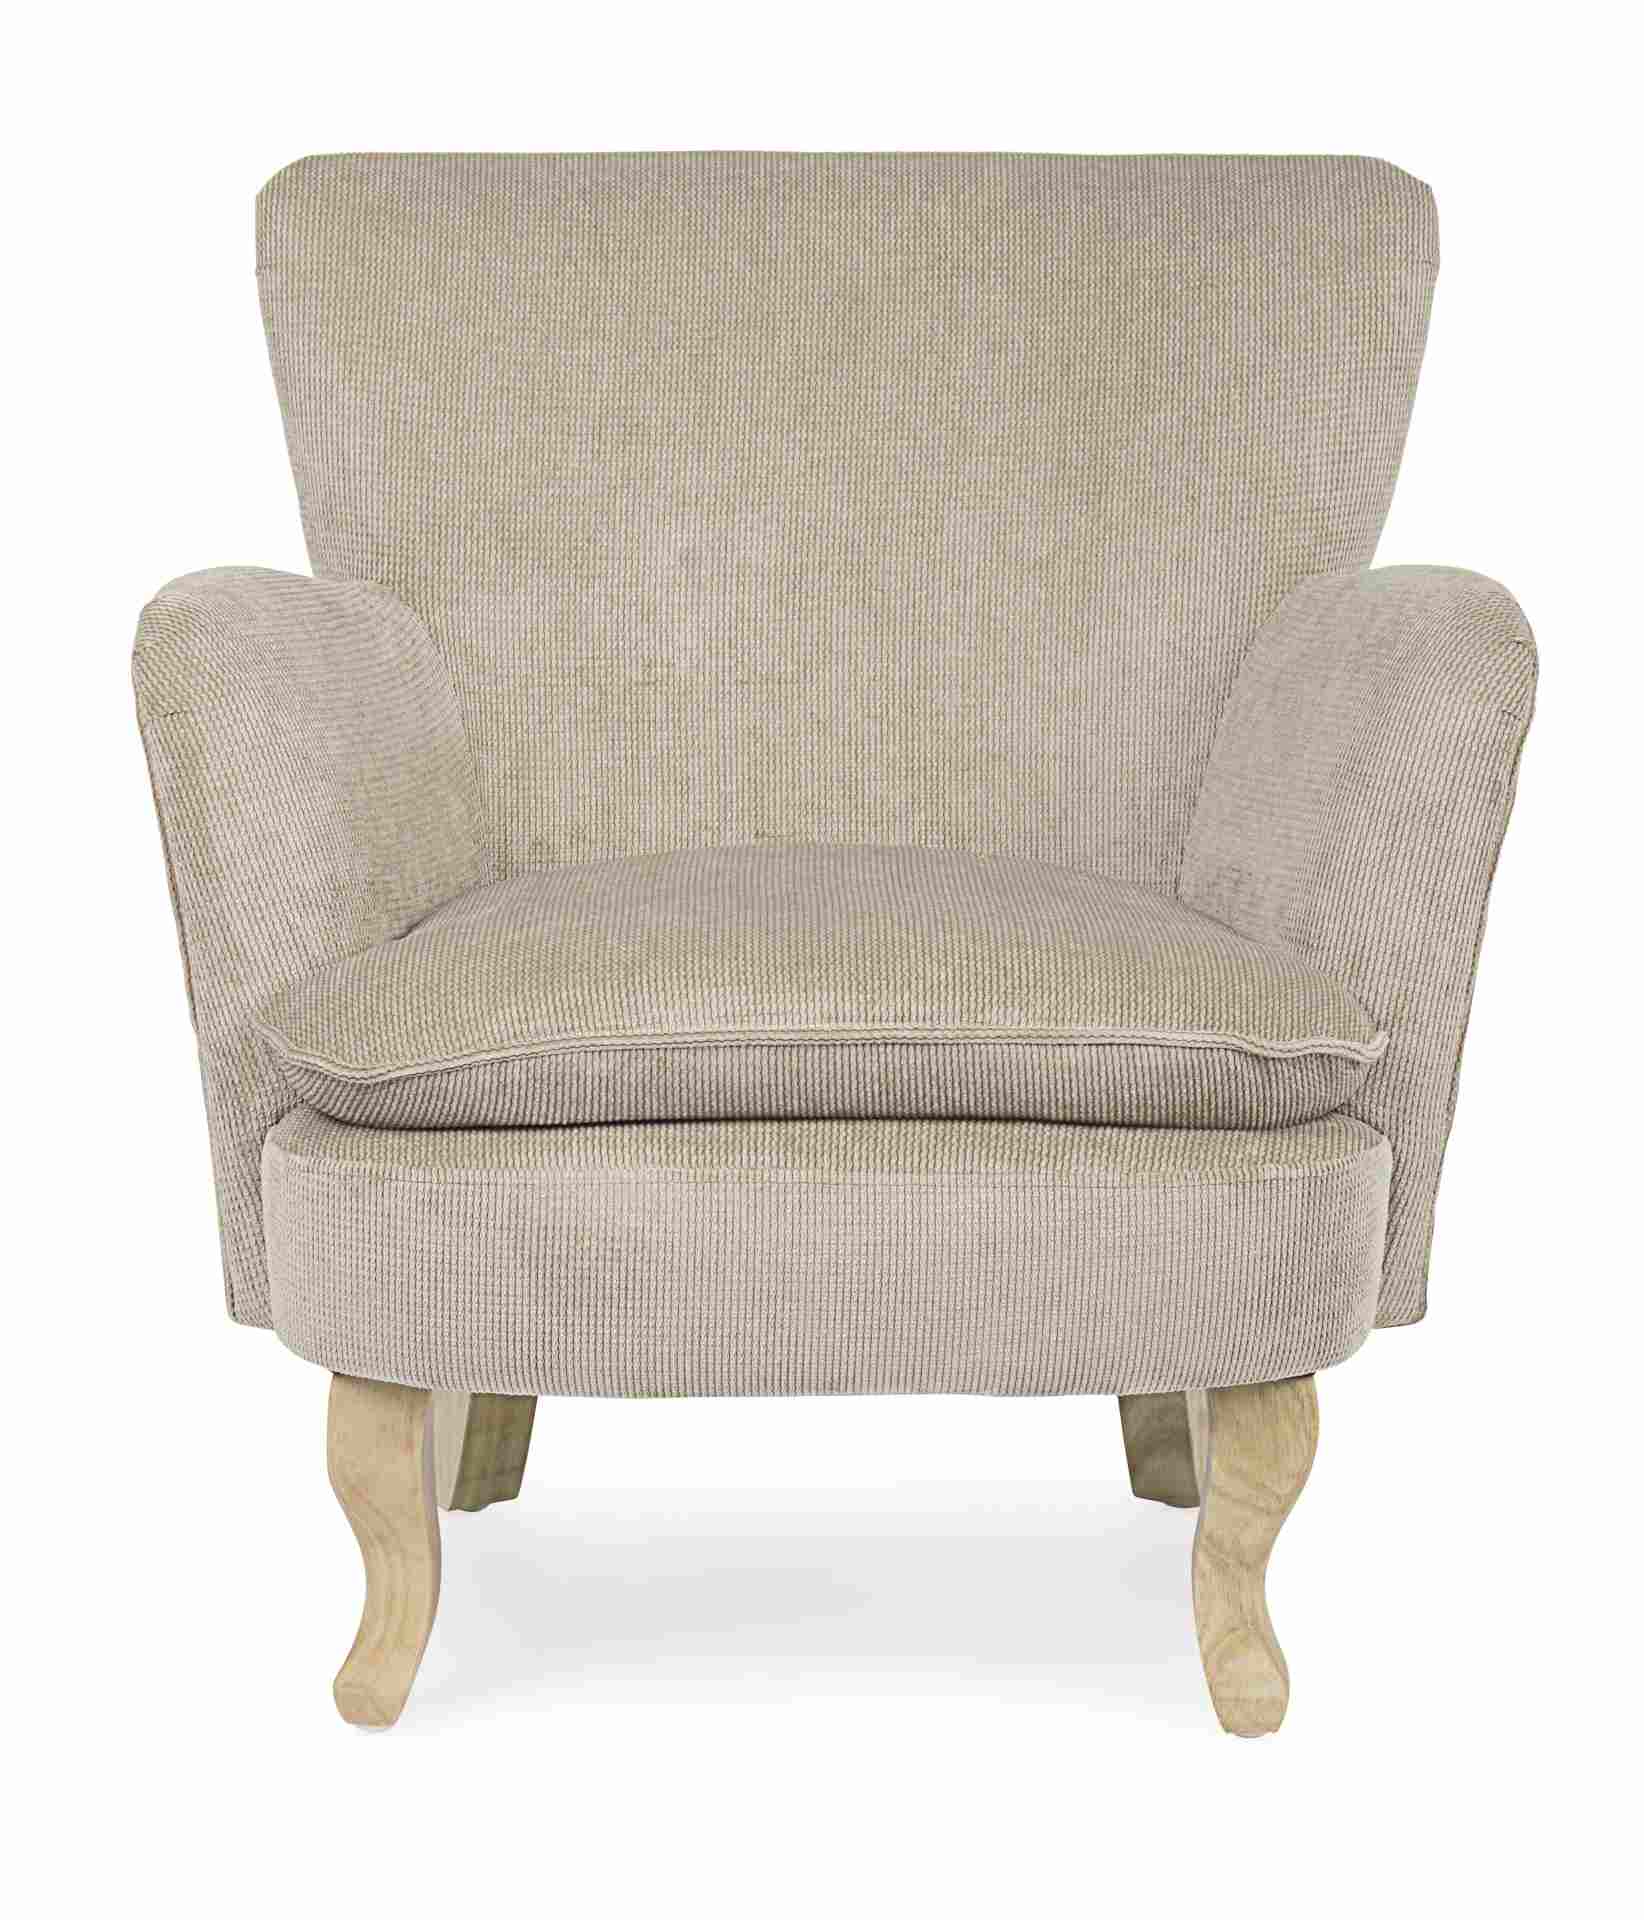 Der Sessel Chenille überzeugt mit seinem klassischen Design. Gefertigt wurde er aus Stoff in Cord-Optik, welcher einen Taupe Farbton besitzt. Das Gestell ist aus Kautschukholz und hat eine natürliche Farbe. Der Sessel besitzt eine Sitzhöhe von 45 cm. Die 